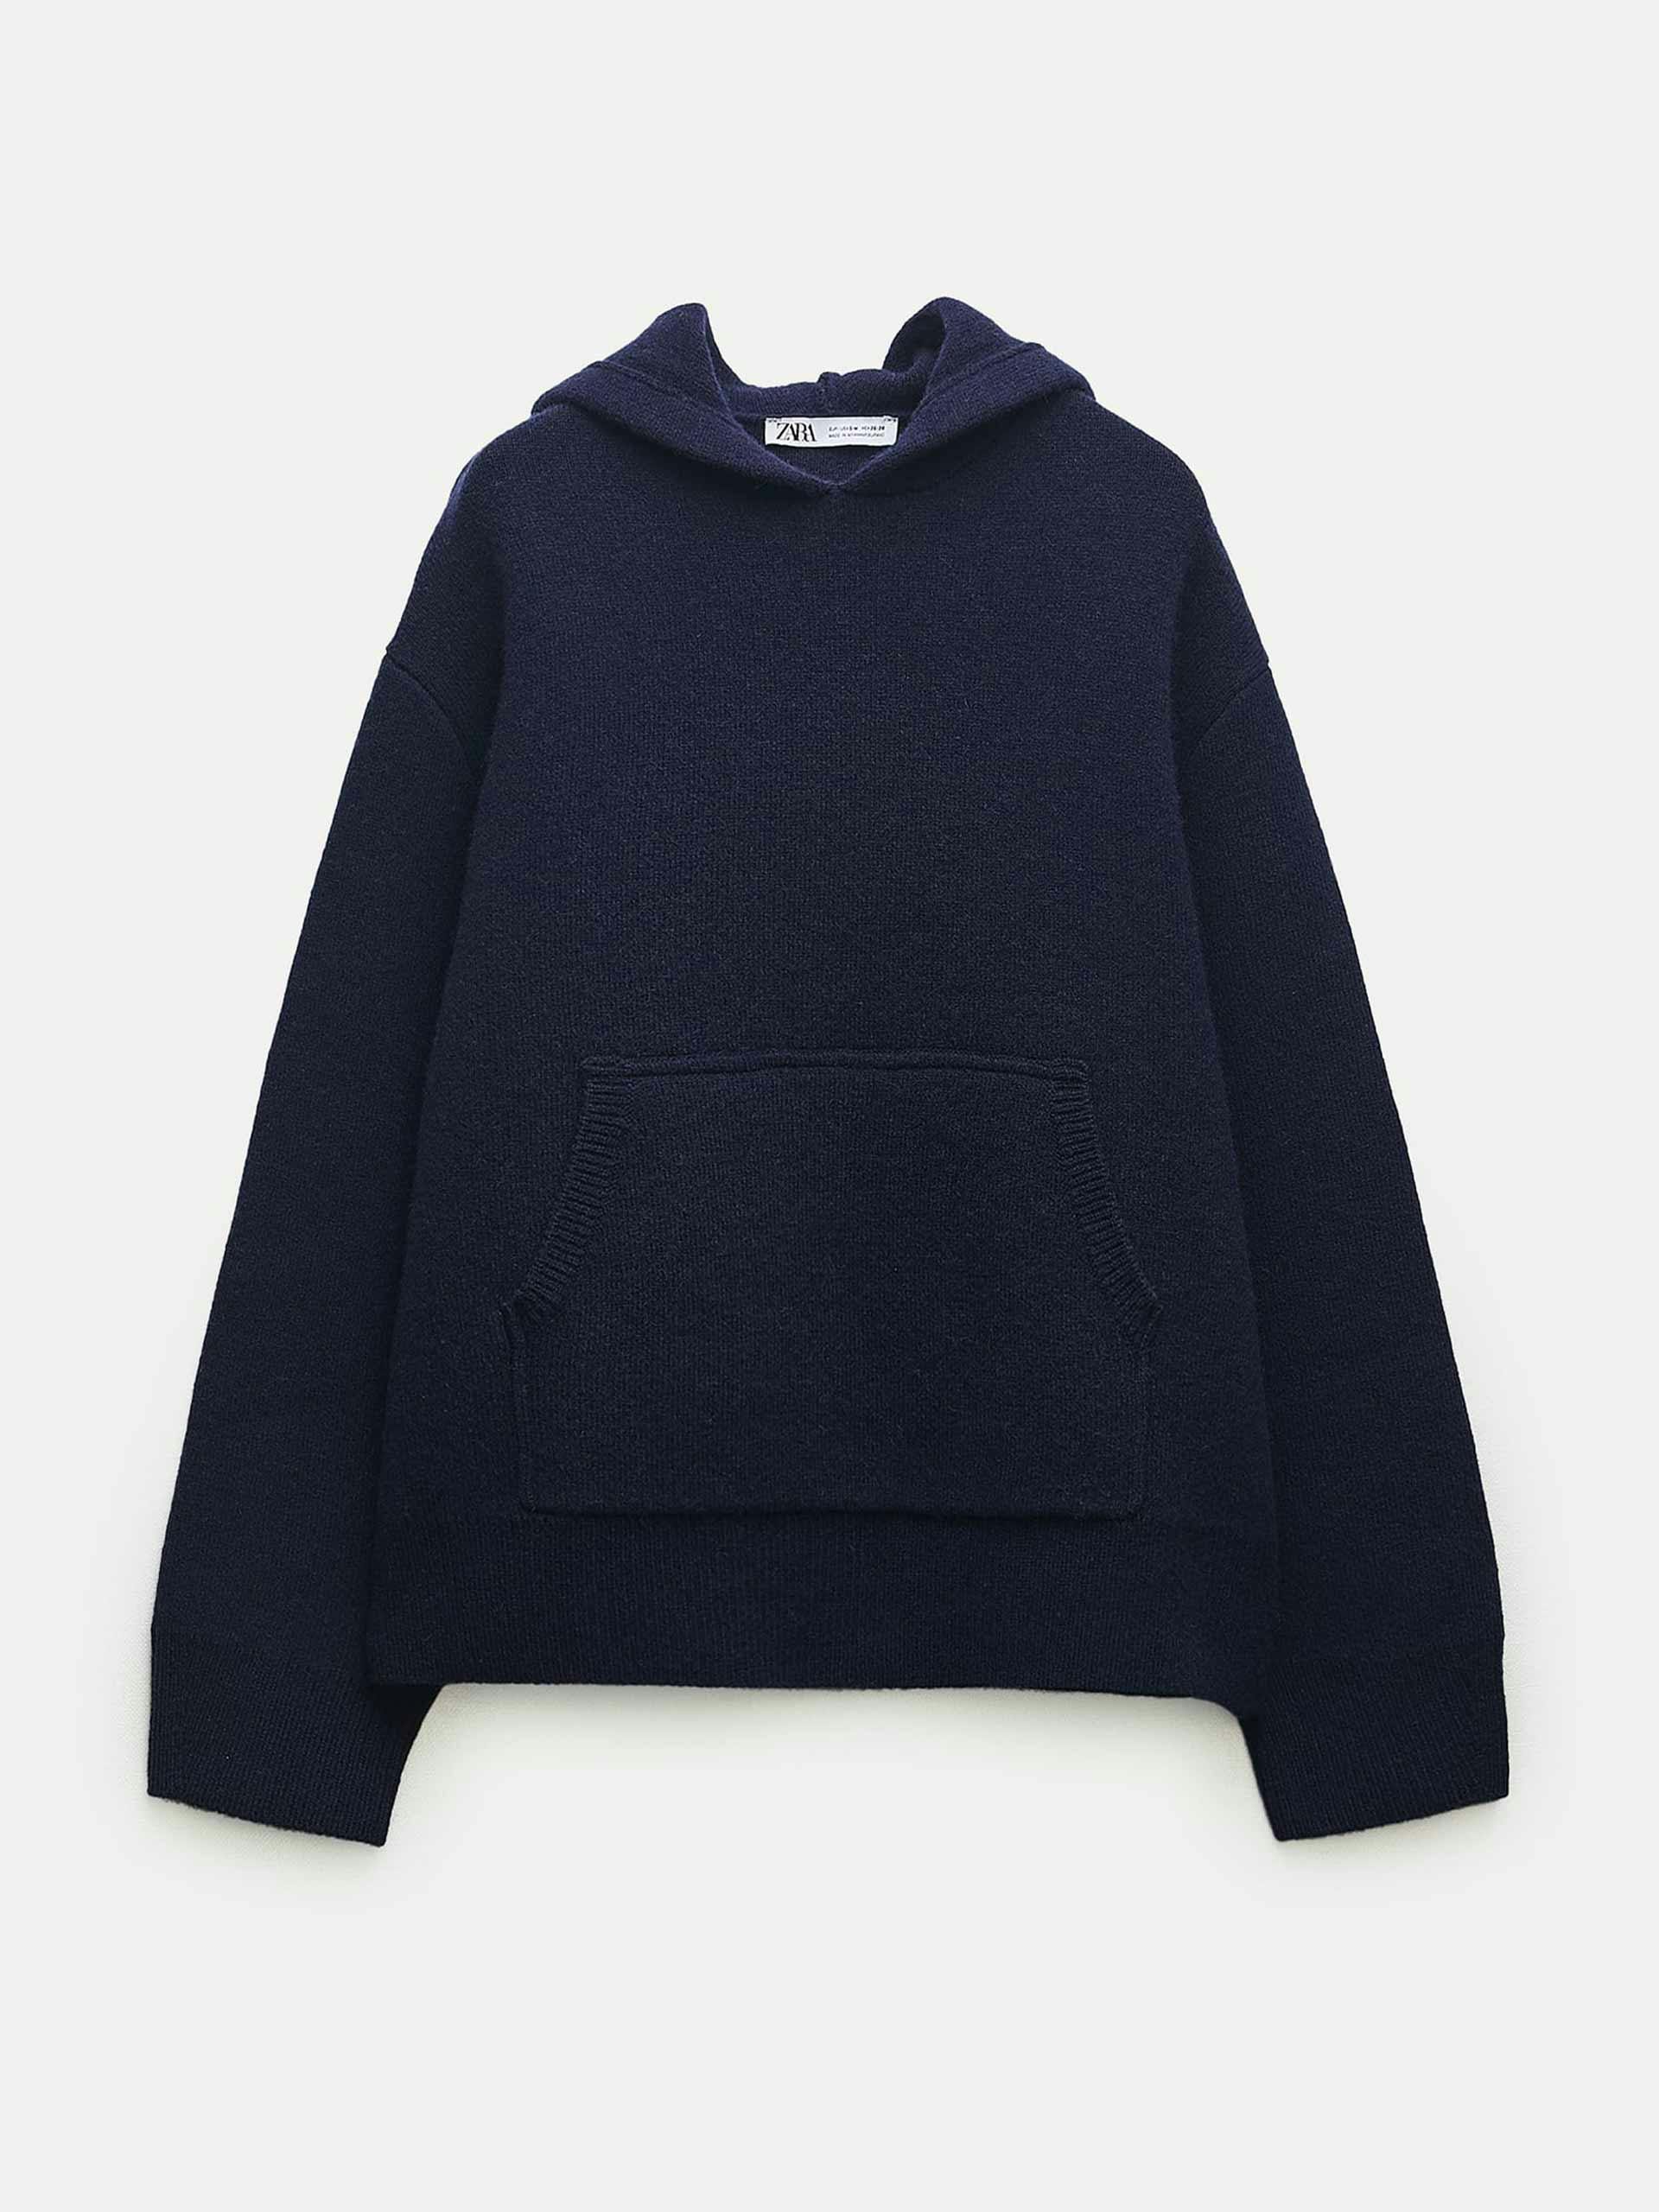 Oversize wool knit blue hoodie